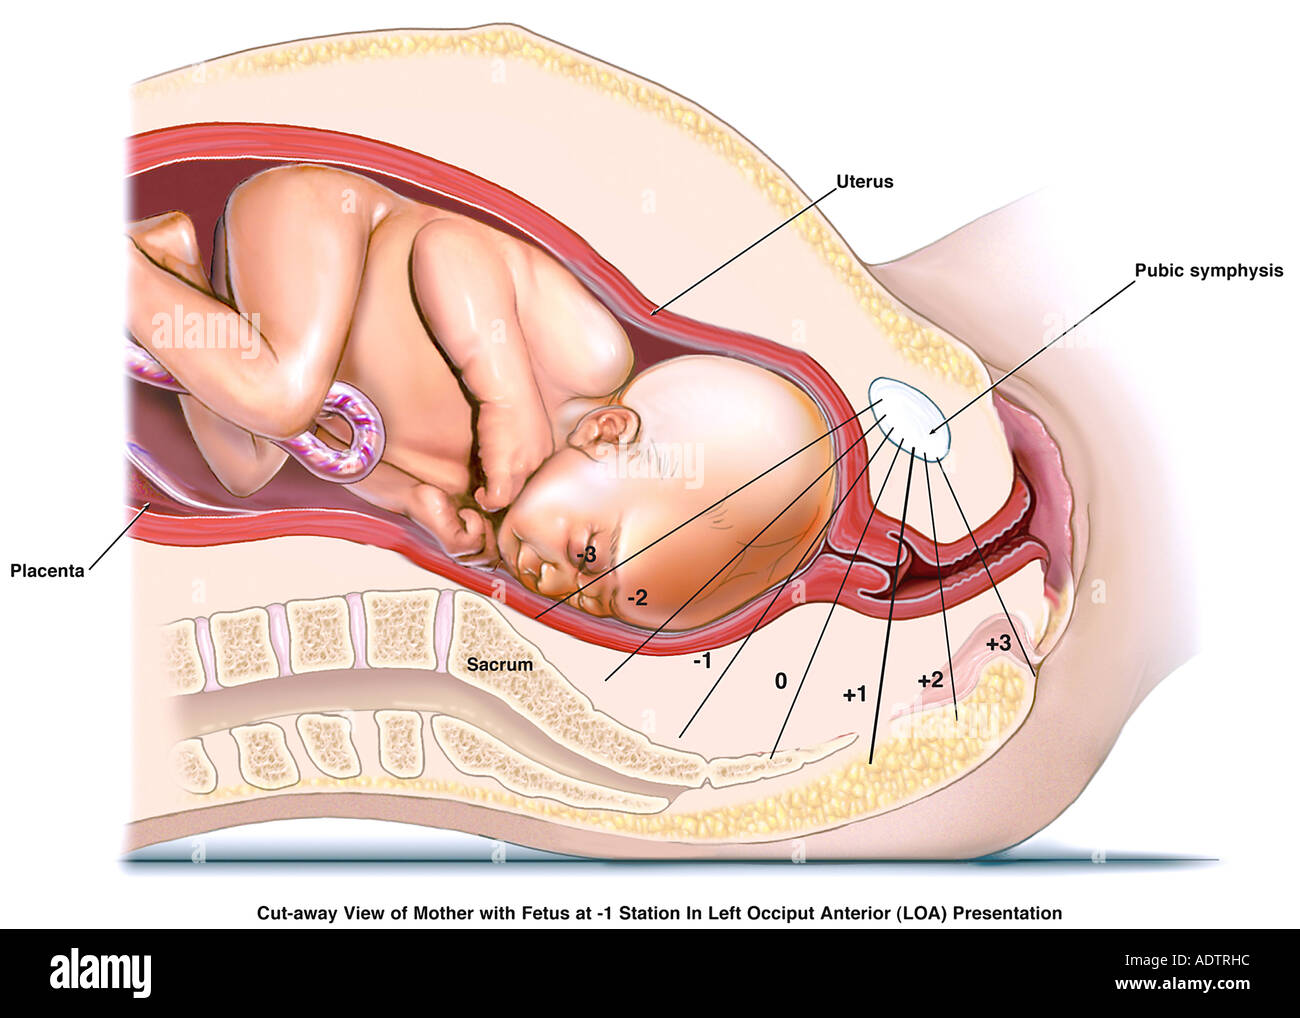 Vaginal birth breech position